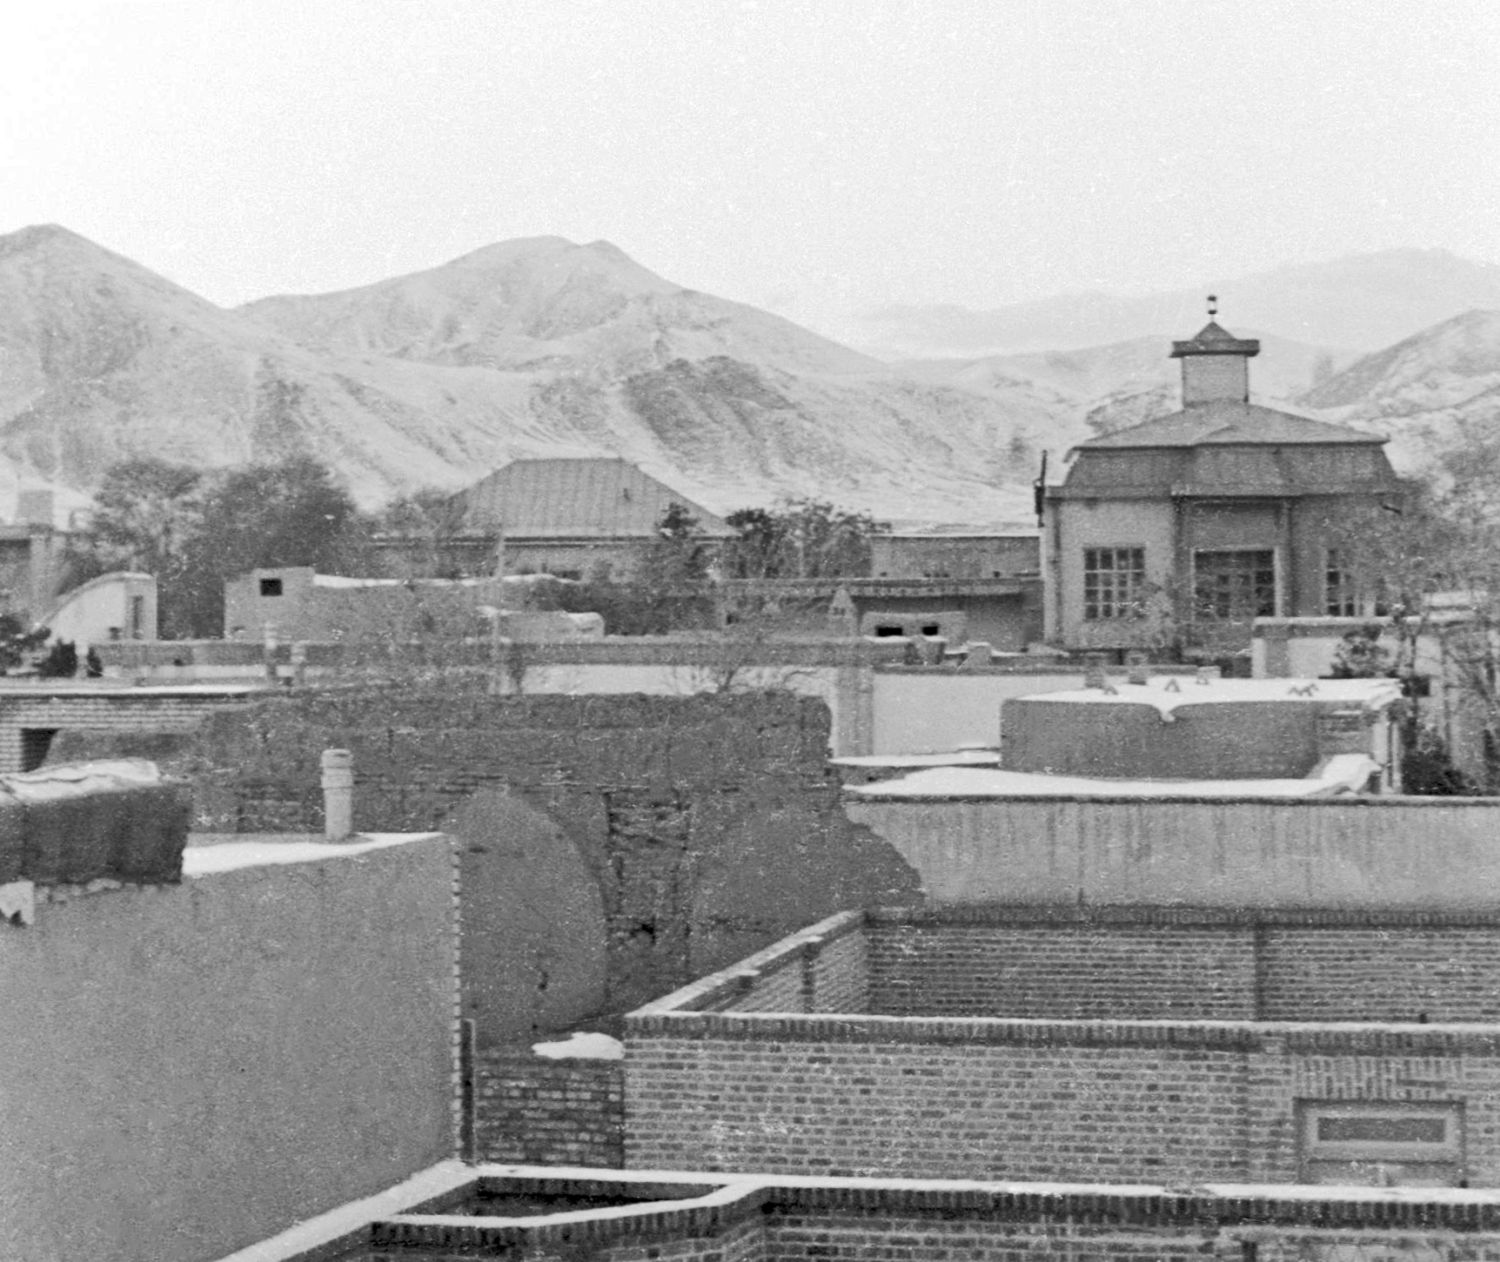 View over rooftops in Arak, Iran.